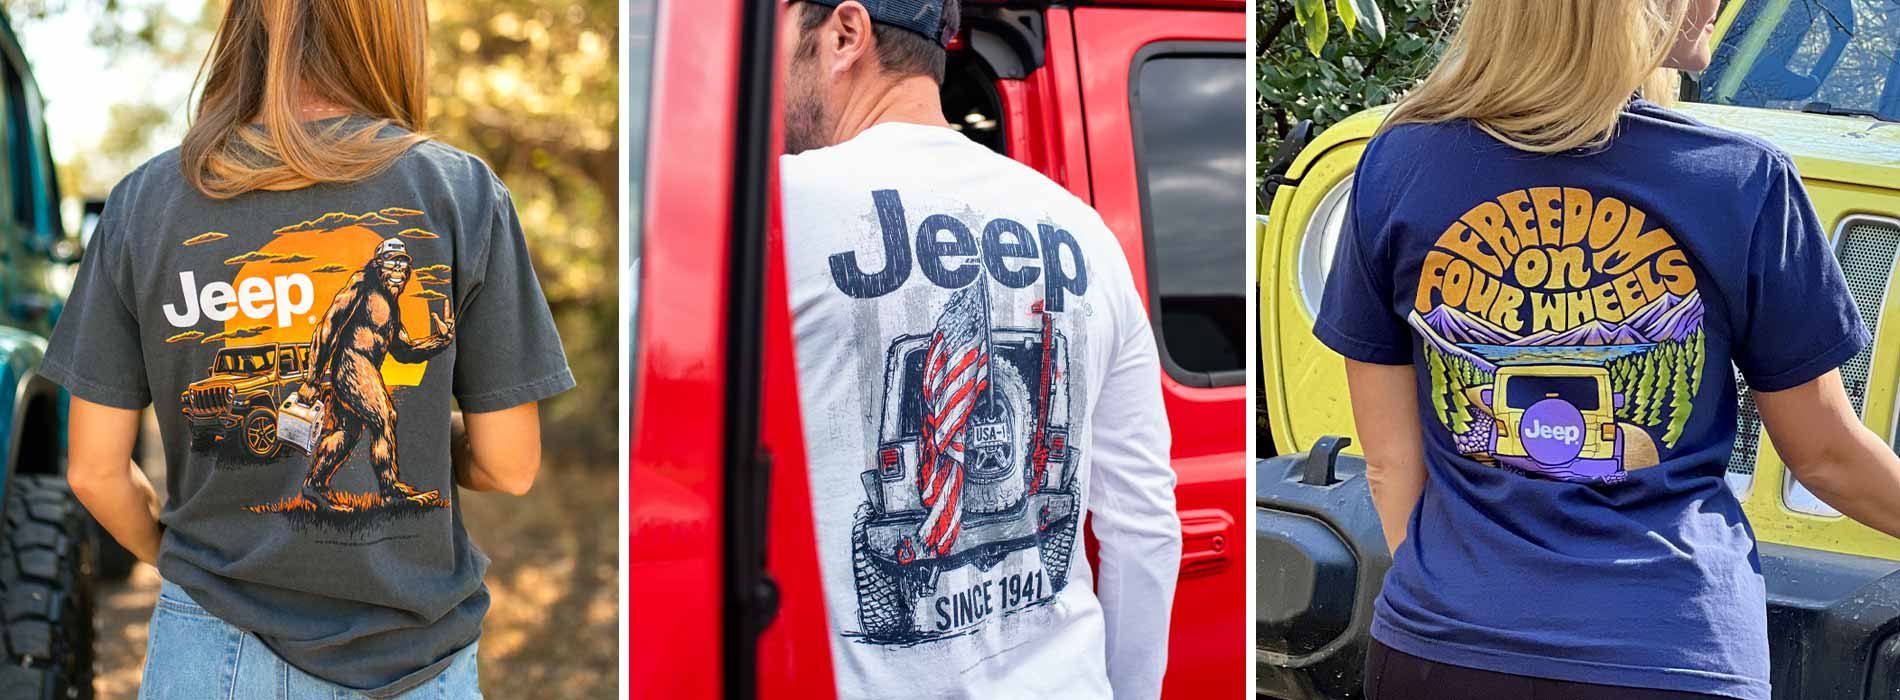 jeep-t-shirts